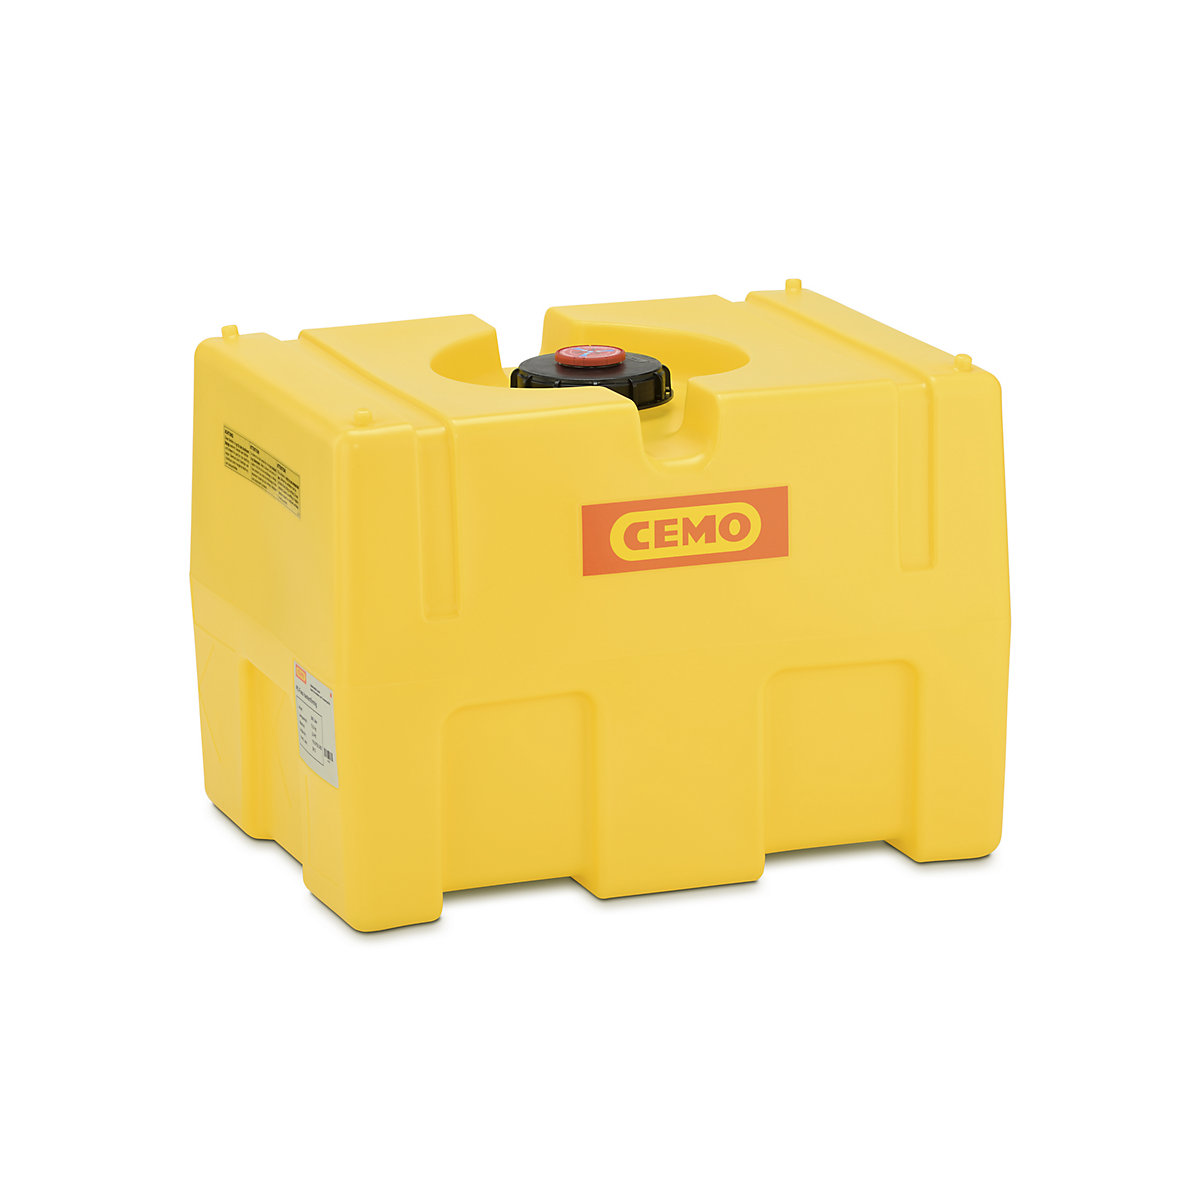 CEMO – Butoi din PE pentru apă, sub formă de cutie, galben, butoi PE, sub formă de cutie 200 l